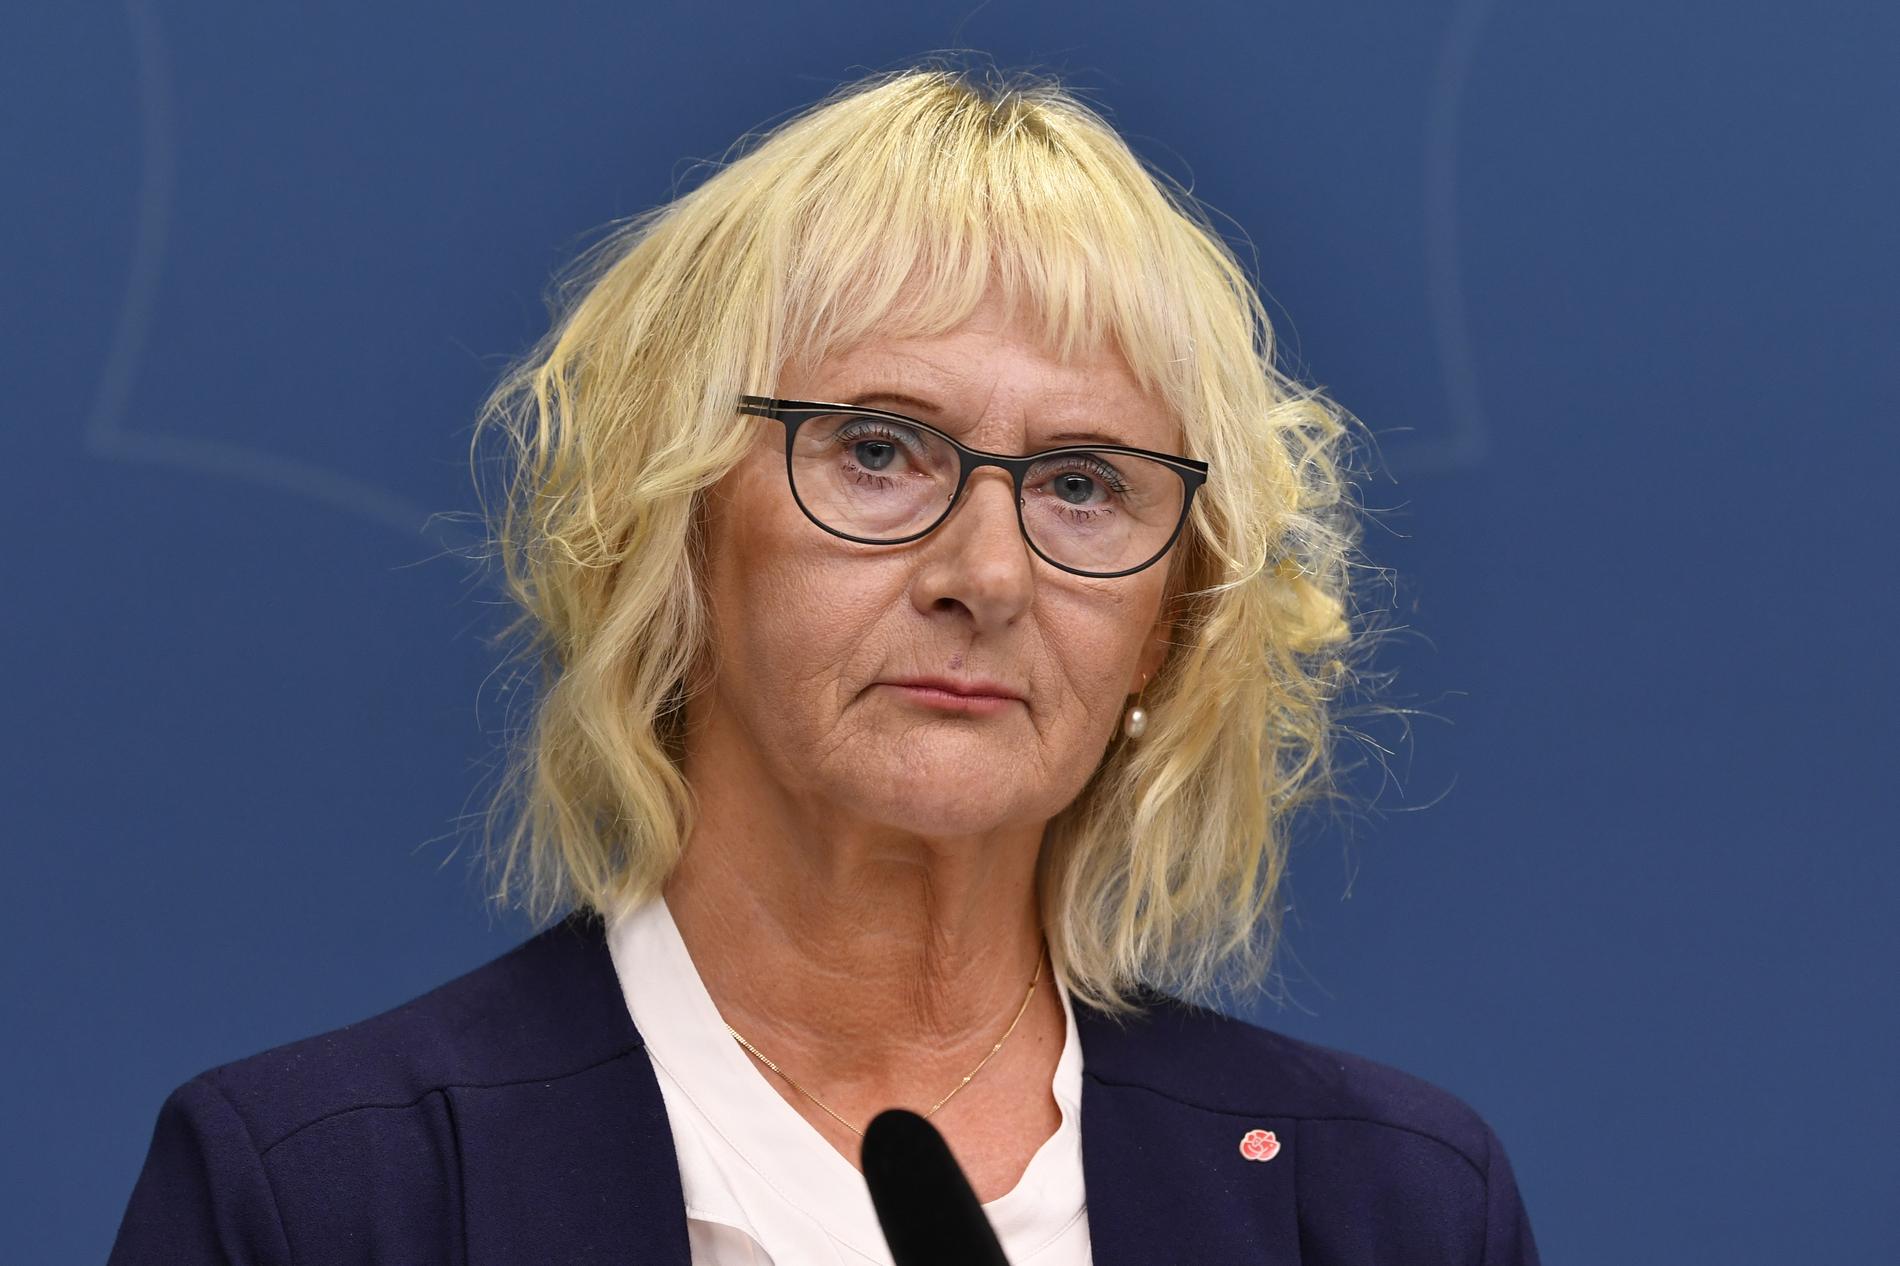 Lena Micko blir ny civilminister efter Ardalan Shekarabi som tar över som socialförsäkringsminister efter Annika Strandhäll.